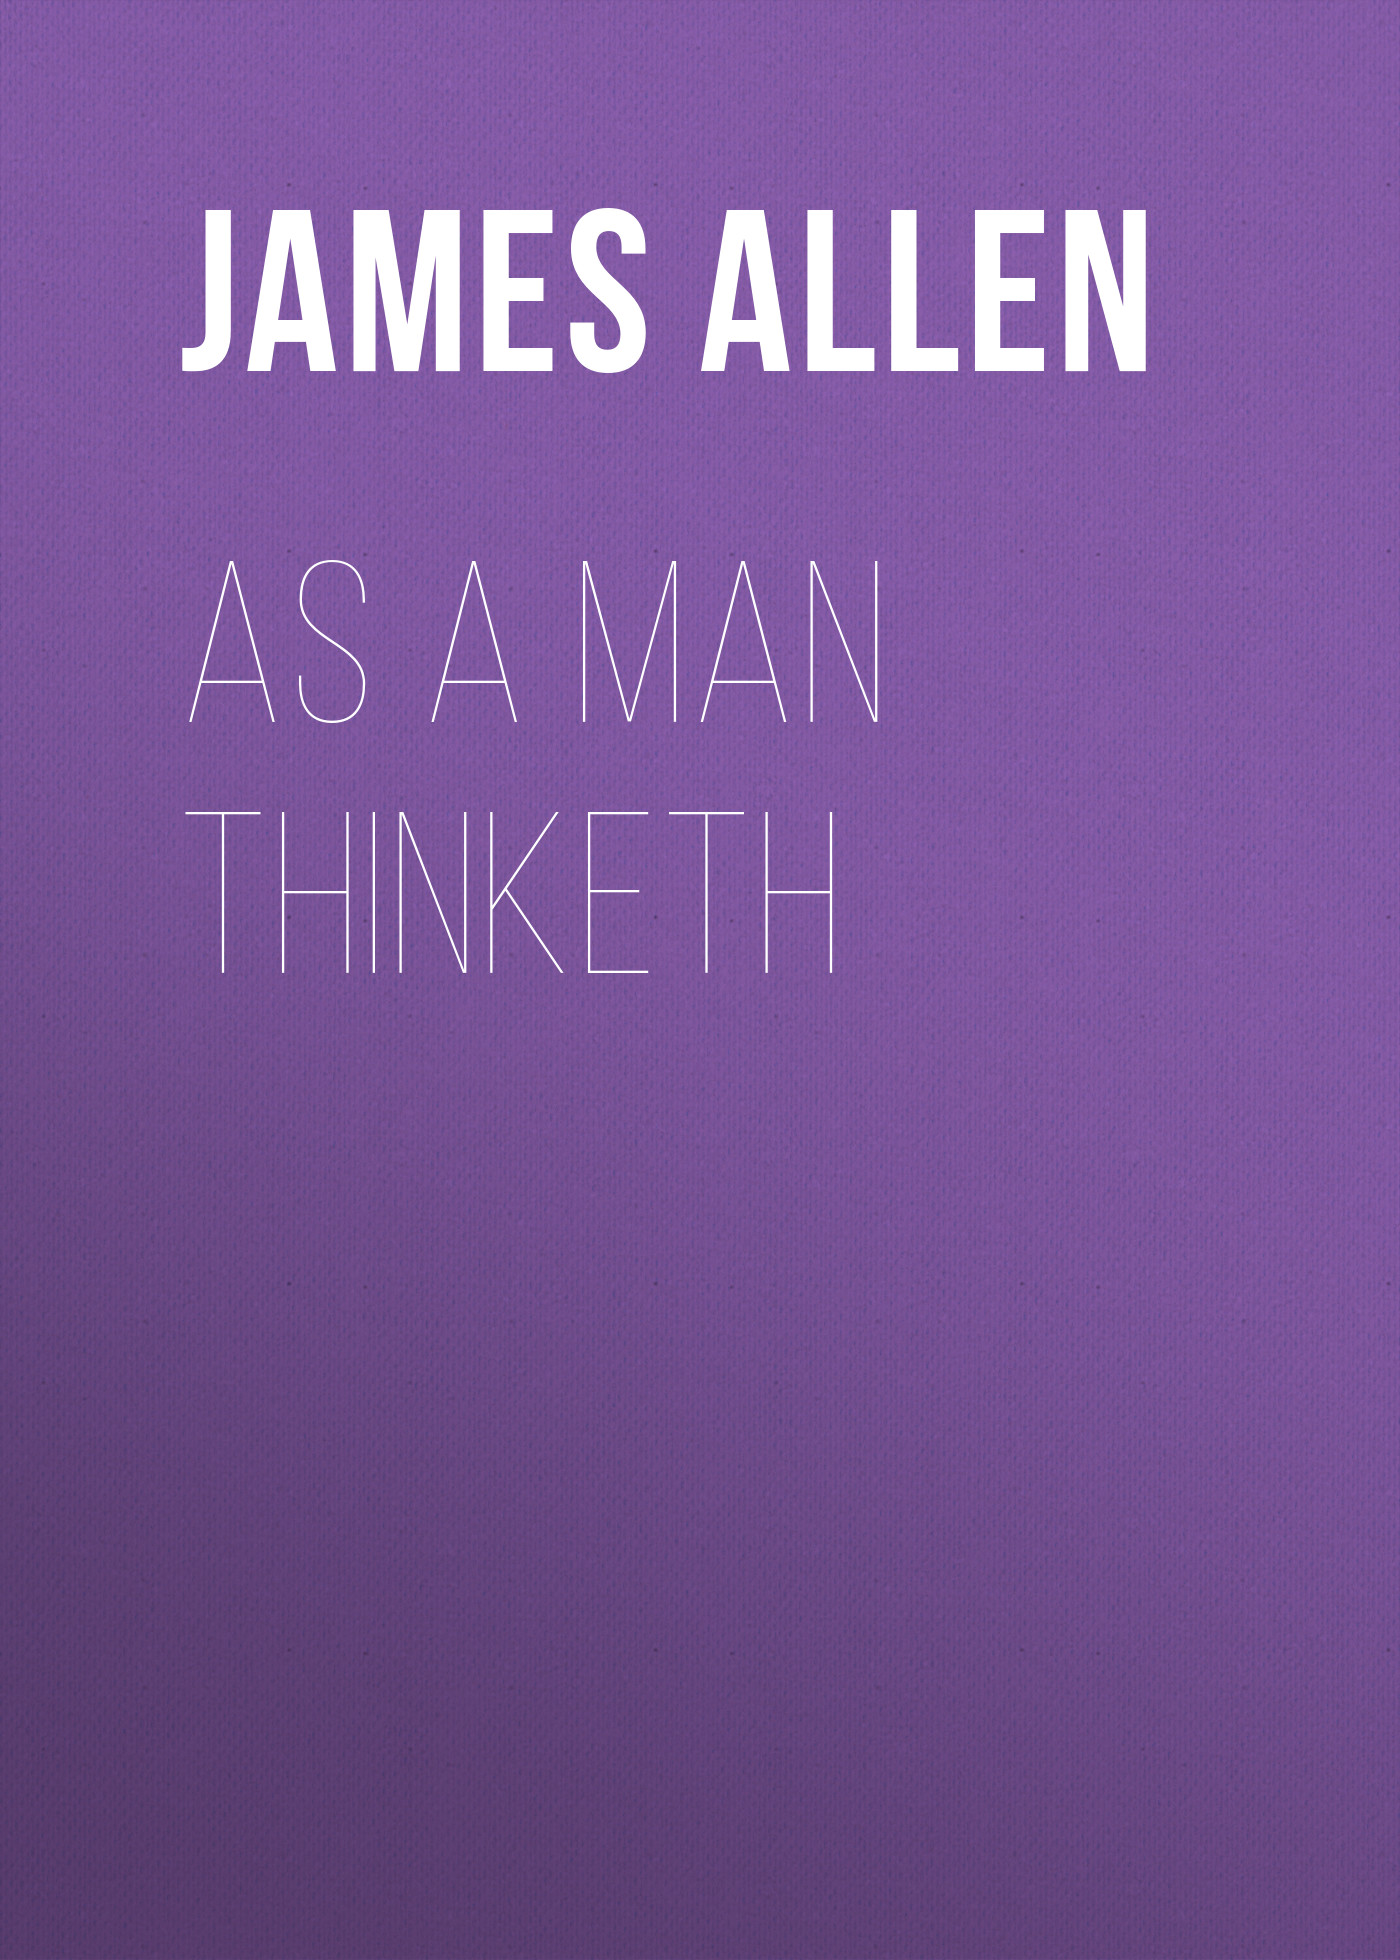 Книга As a Man Thinketh из серии , созданная James Allen, может относится к жанру Зарубежная классика, Философия, Зарубежная психология, Зарубежная старинная литература. Стоимость электронной книги As a Man Thinketh с идентификатором 34840582 составляет 0 руб.